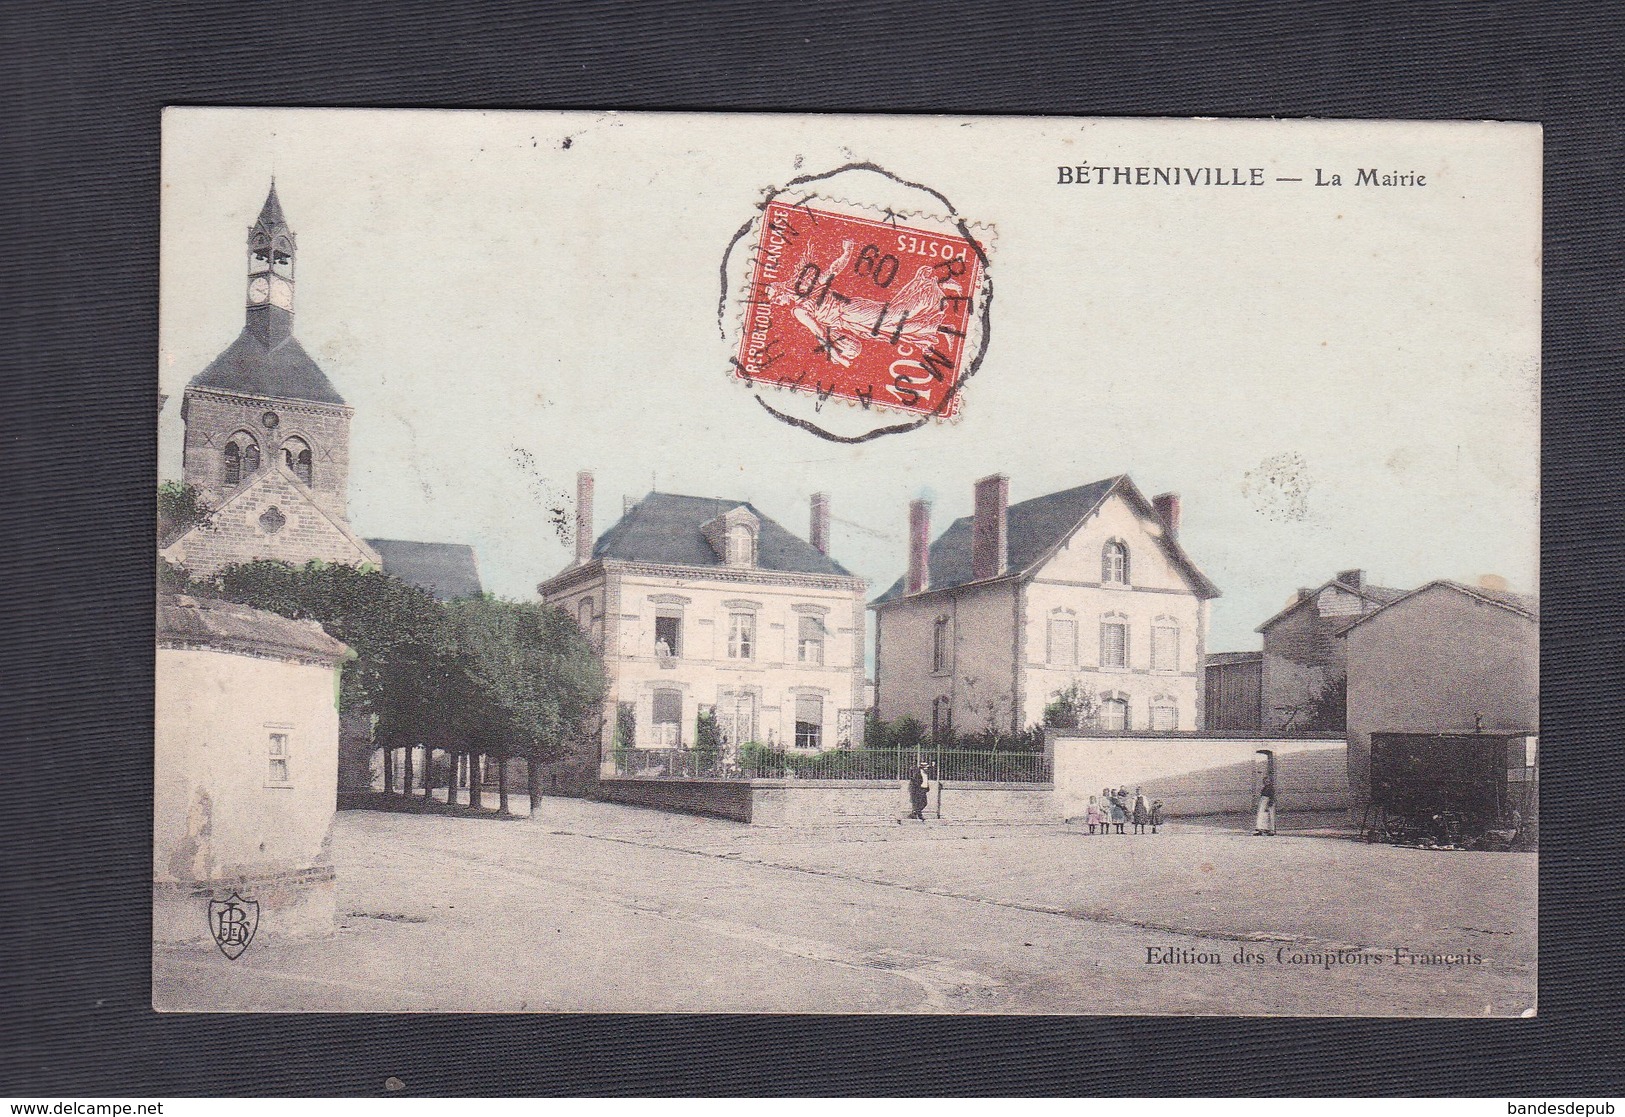 Betheniville (51) La Mairie Edition Des Comptoirs Francais Animée Colorisée Convoyeur Reims Apremont Et Epernay Sezanne - Bétheniville